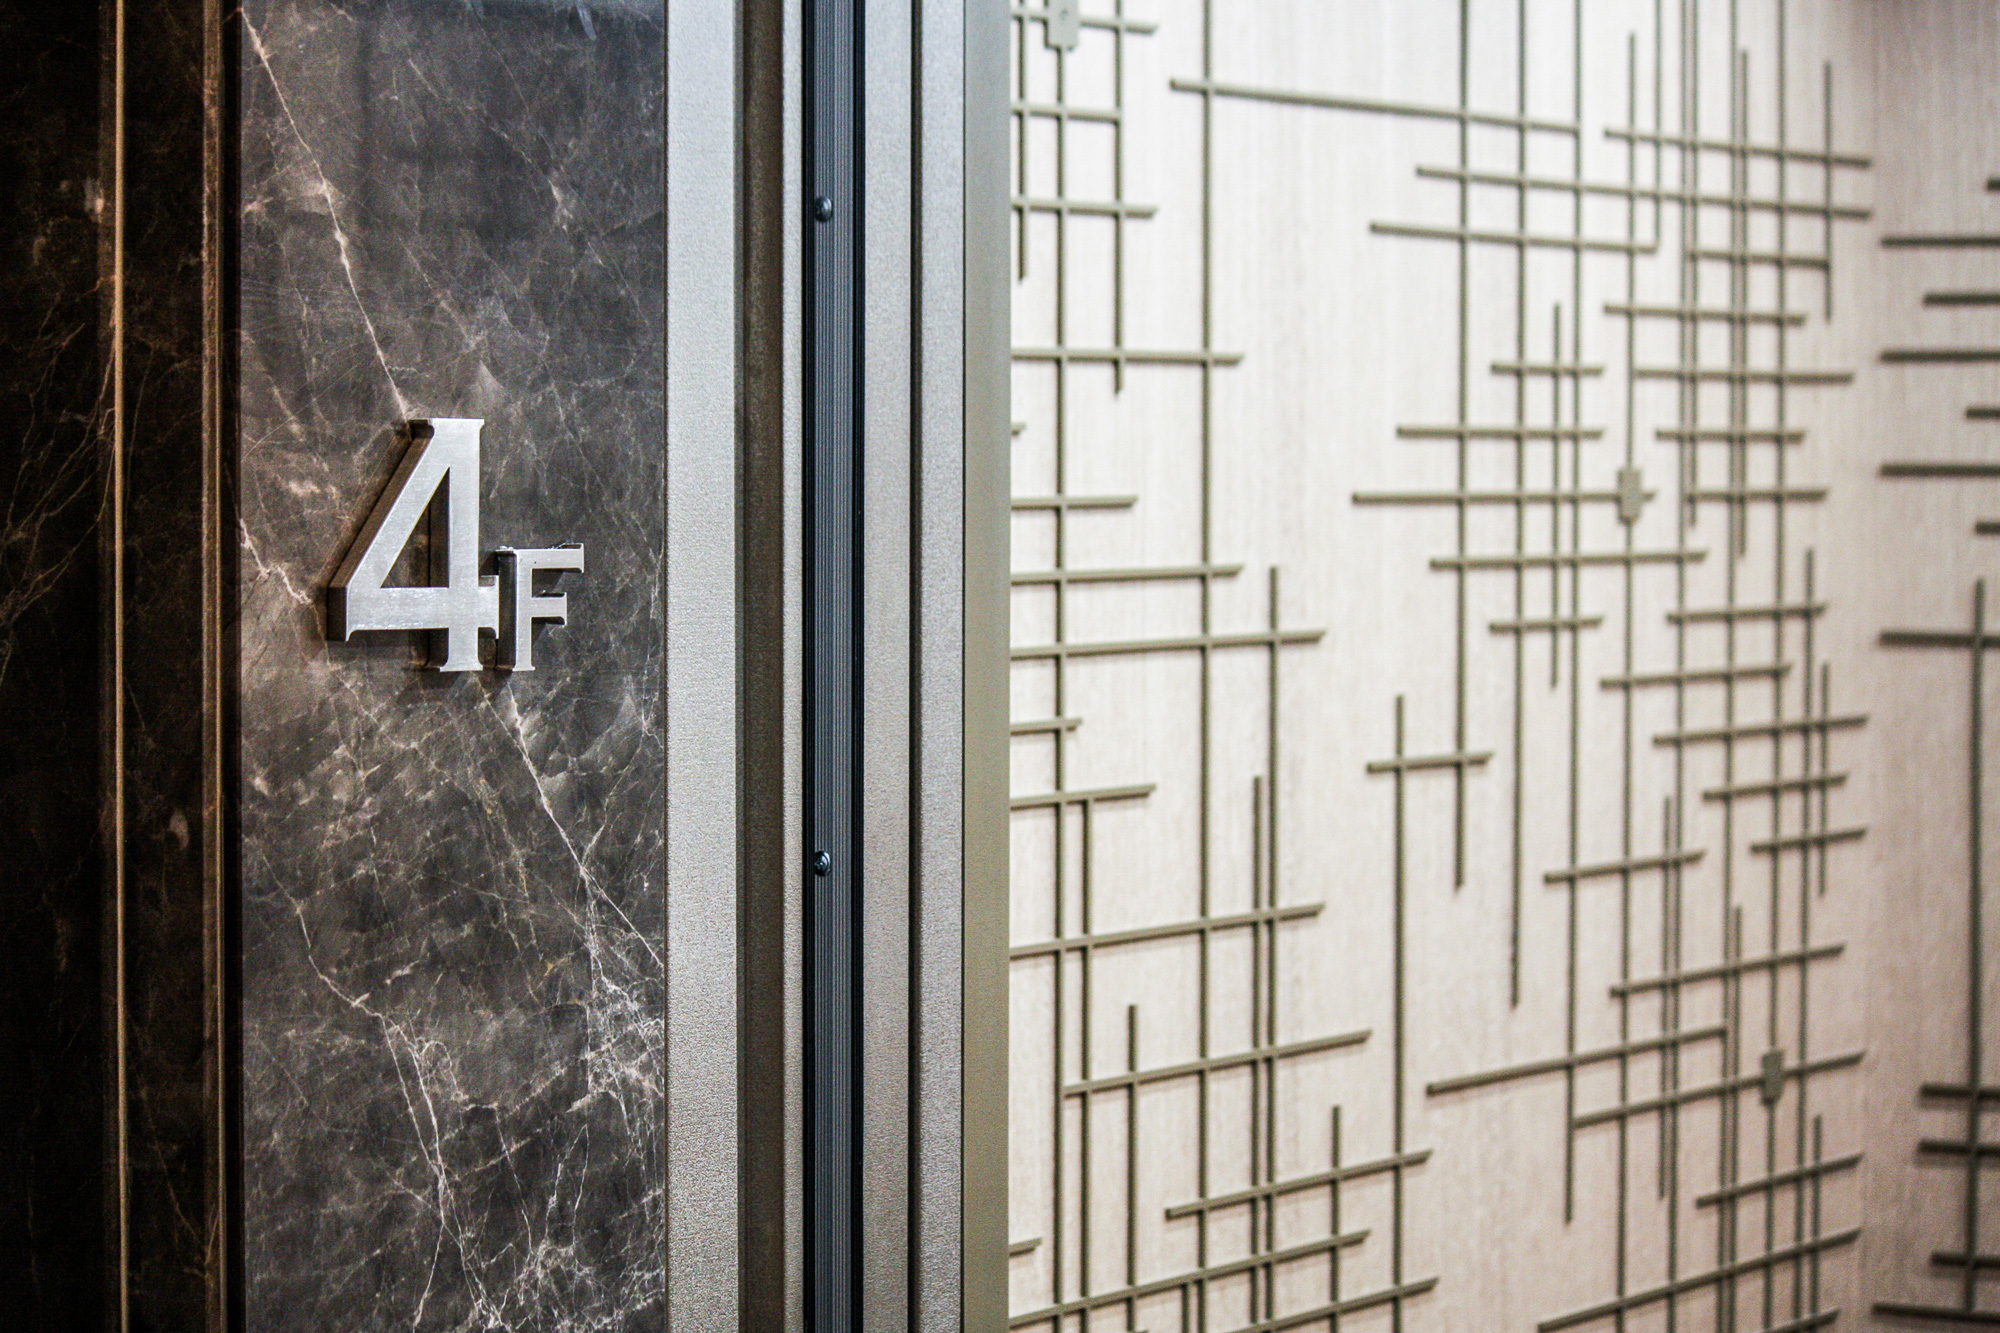 numéro d'étage dans cage d'ascenseur sur marbre et grillage métallique